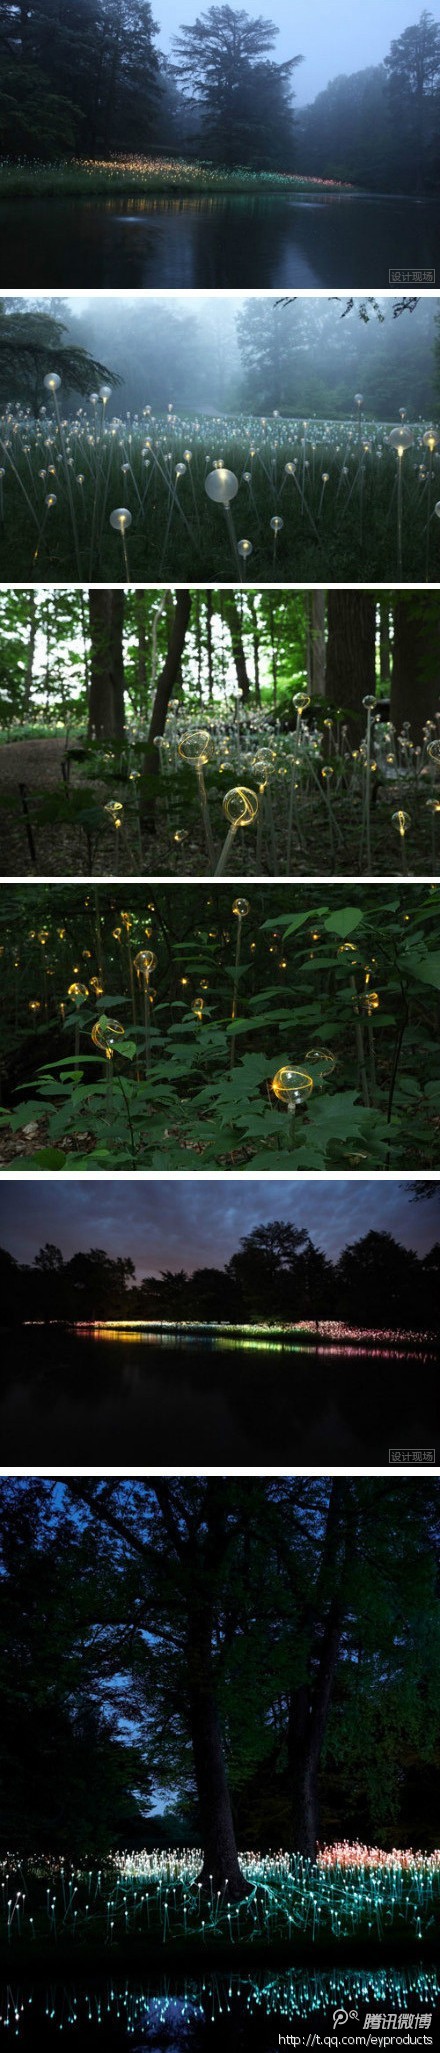 【光的展览】英国灯具设计师Bruce Munro 在宾夕法尼亚植物园举办了一个以“光”为主题的展览。【-4107】